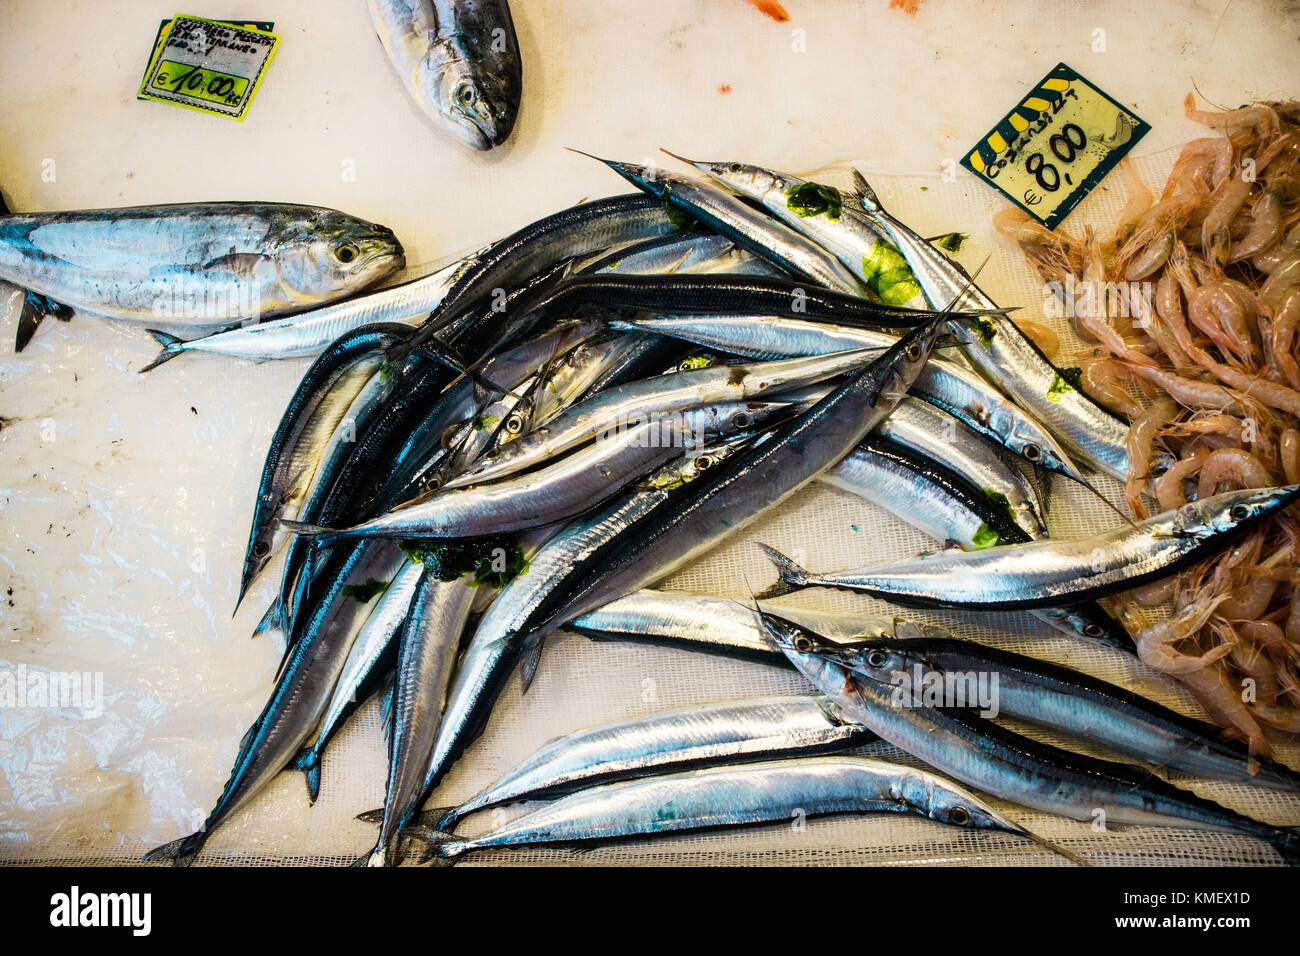 Agugles, camarones y peces de la lampuga en la banqueta de un mercado mediterráneo Foto de stock